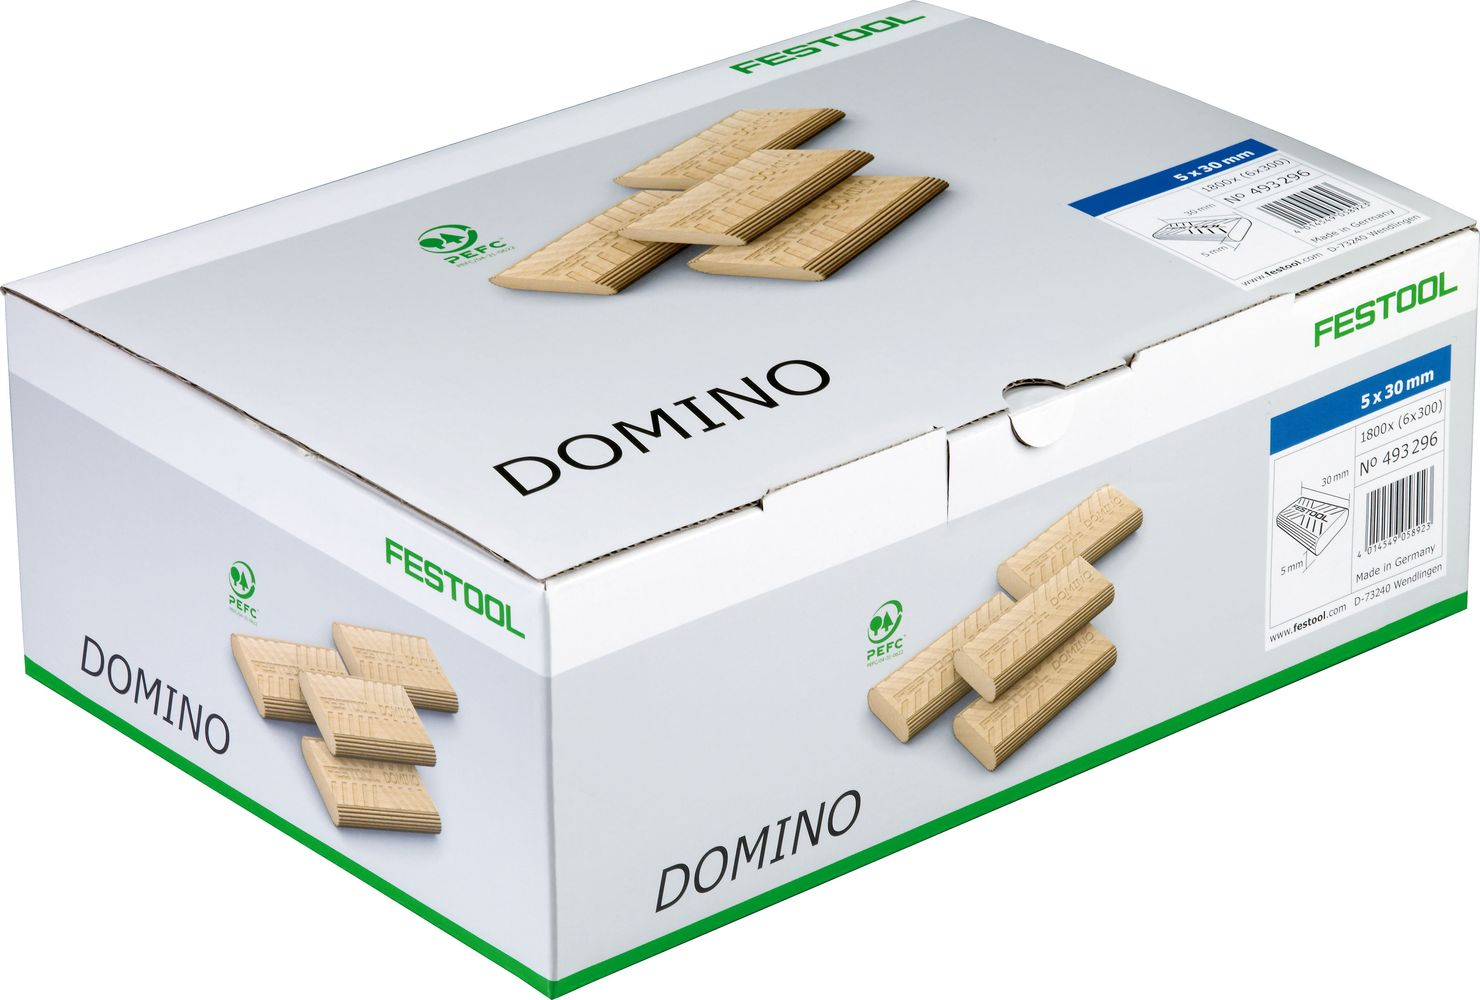 domino-en-hetre-5x30-1800-bte-493296-festool-1